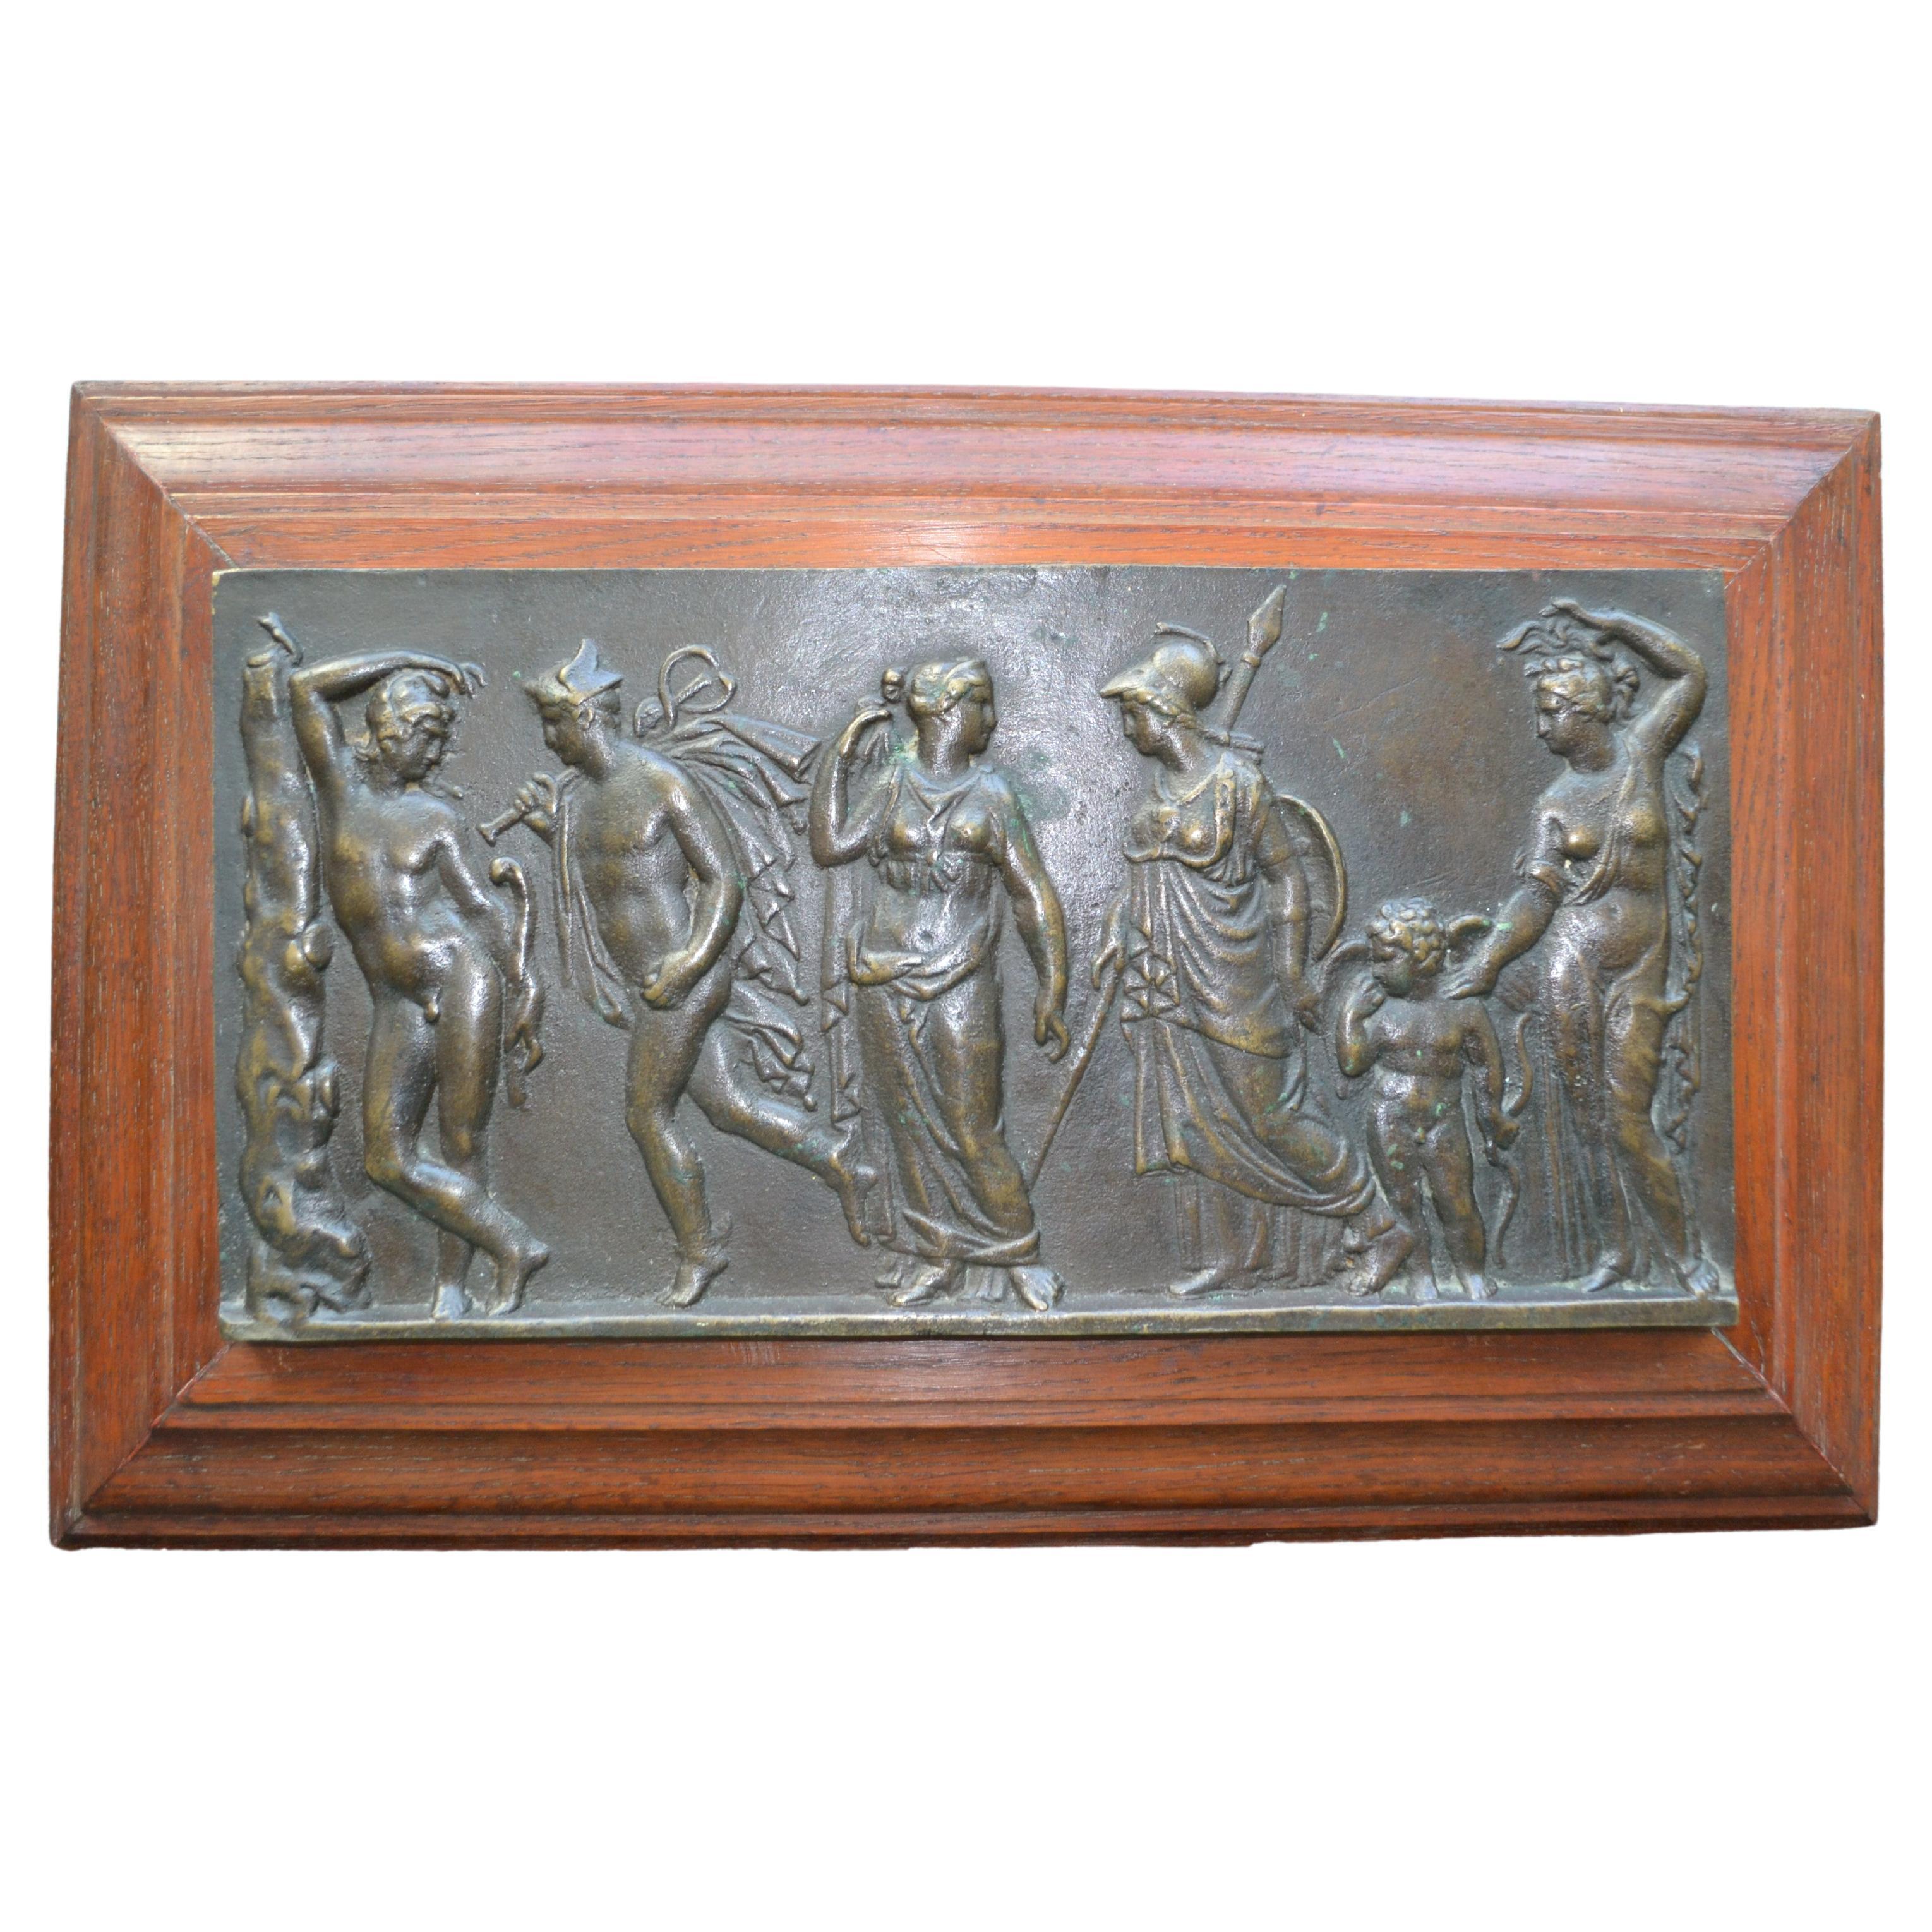 Ein schweres Bronzerelief mit einer klassischen Szene, die ein Gefolge von sechs Figuren zeigt, bestehend aus zwei nackten, stehenden Männern und drei klassisch drapierten Jungfrauen, darunter Athene mit ihrem charakteristischen korinthischen Helm.